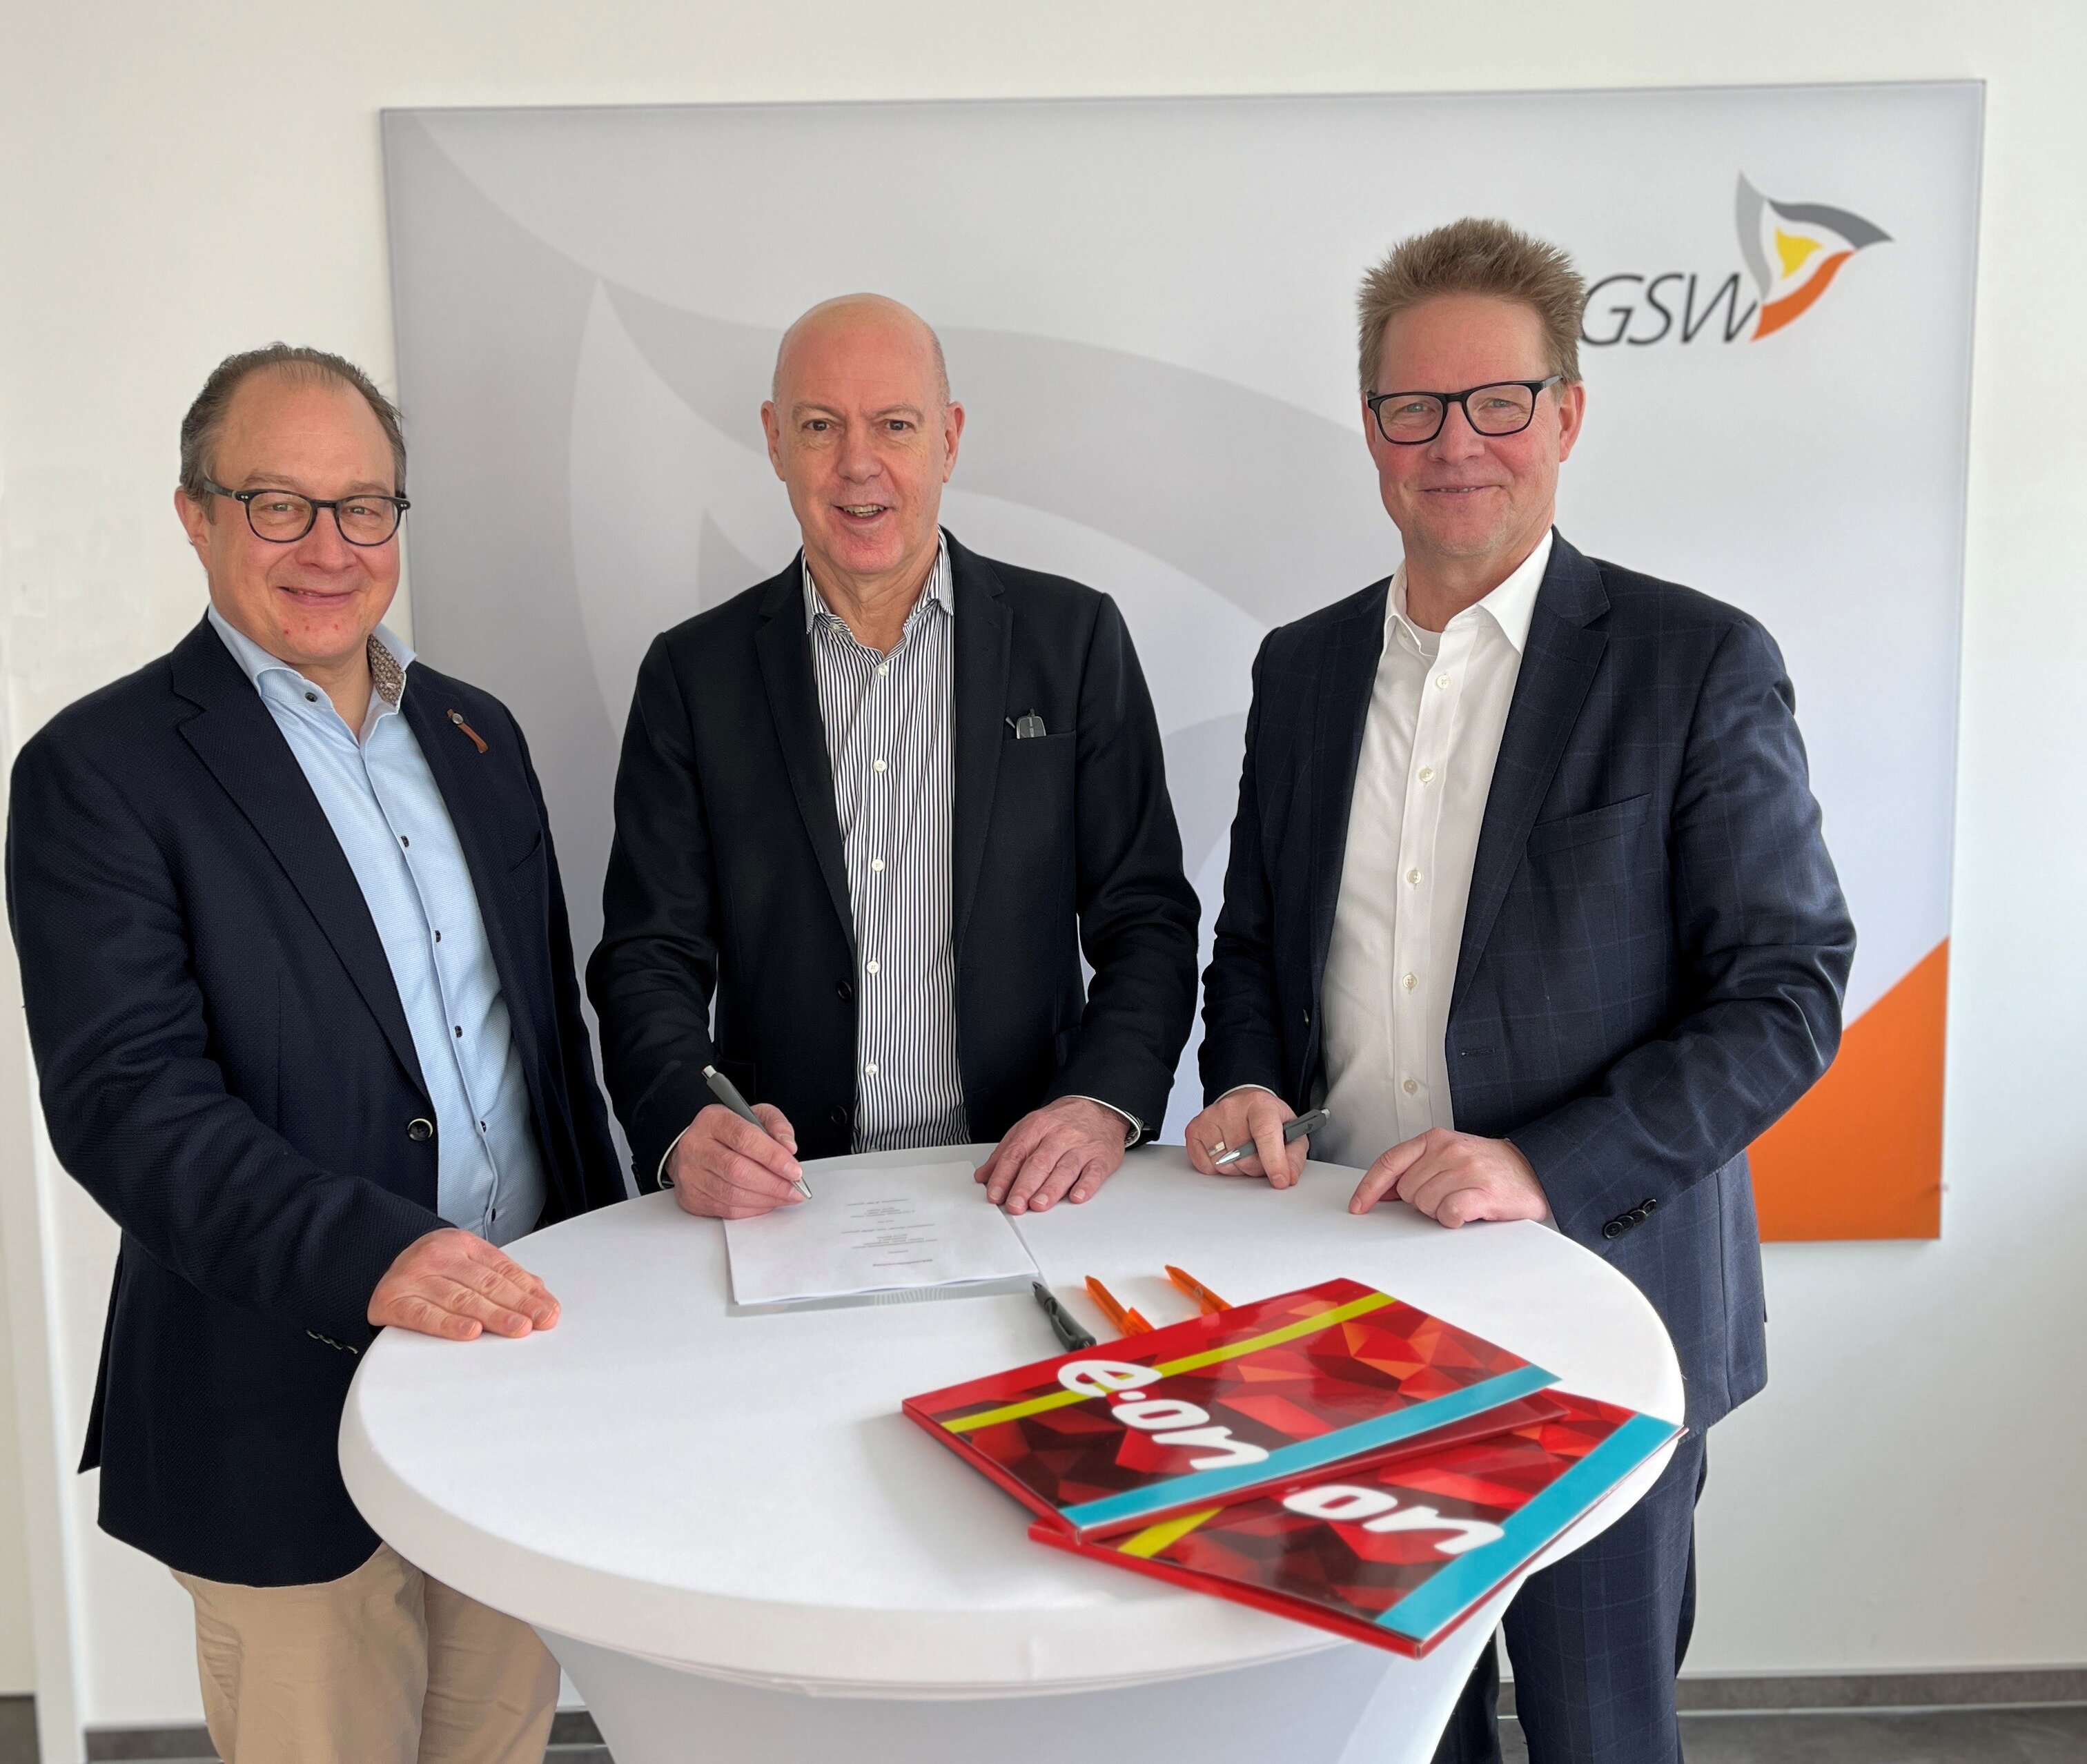 Unterzeichneten den neuen Vertrag für die Wärmelieferung in Bergkamen (v.l.): Patrick Schneckenburger (Geschäftsführer E.ON Energy Solutions GmbH), Jochen Baudrexl (Geschäftsführer der GSW) und Dr. Jochen Handke (Geschäftsführer E.ON Energy Solutions GmbH).